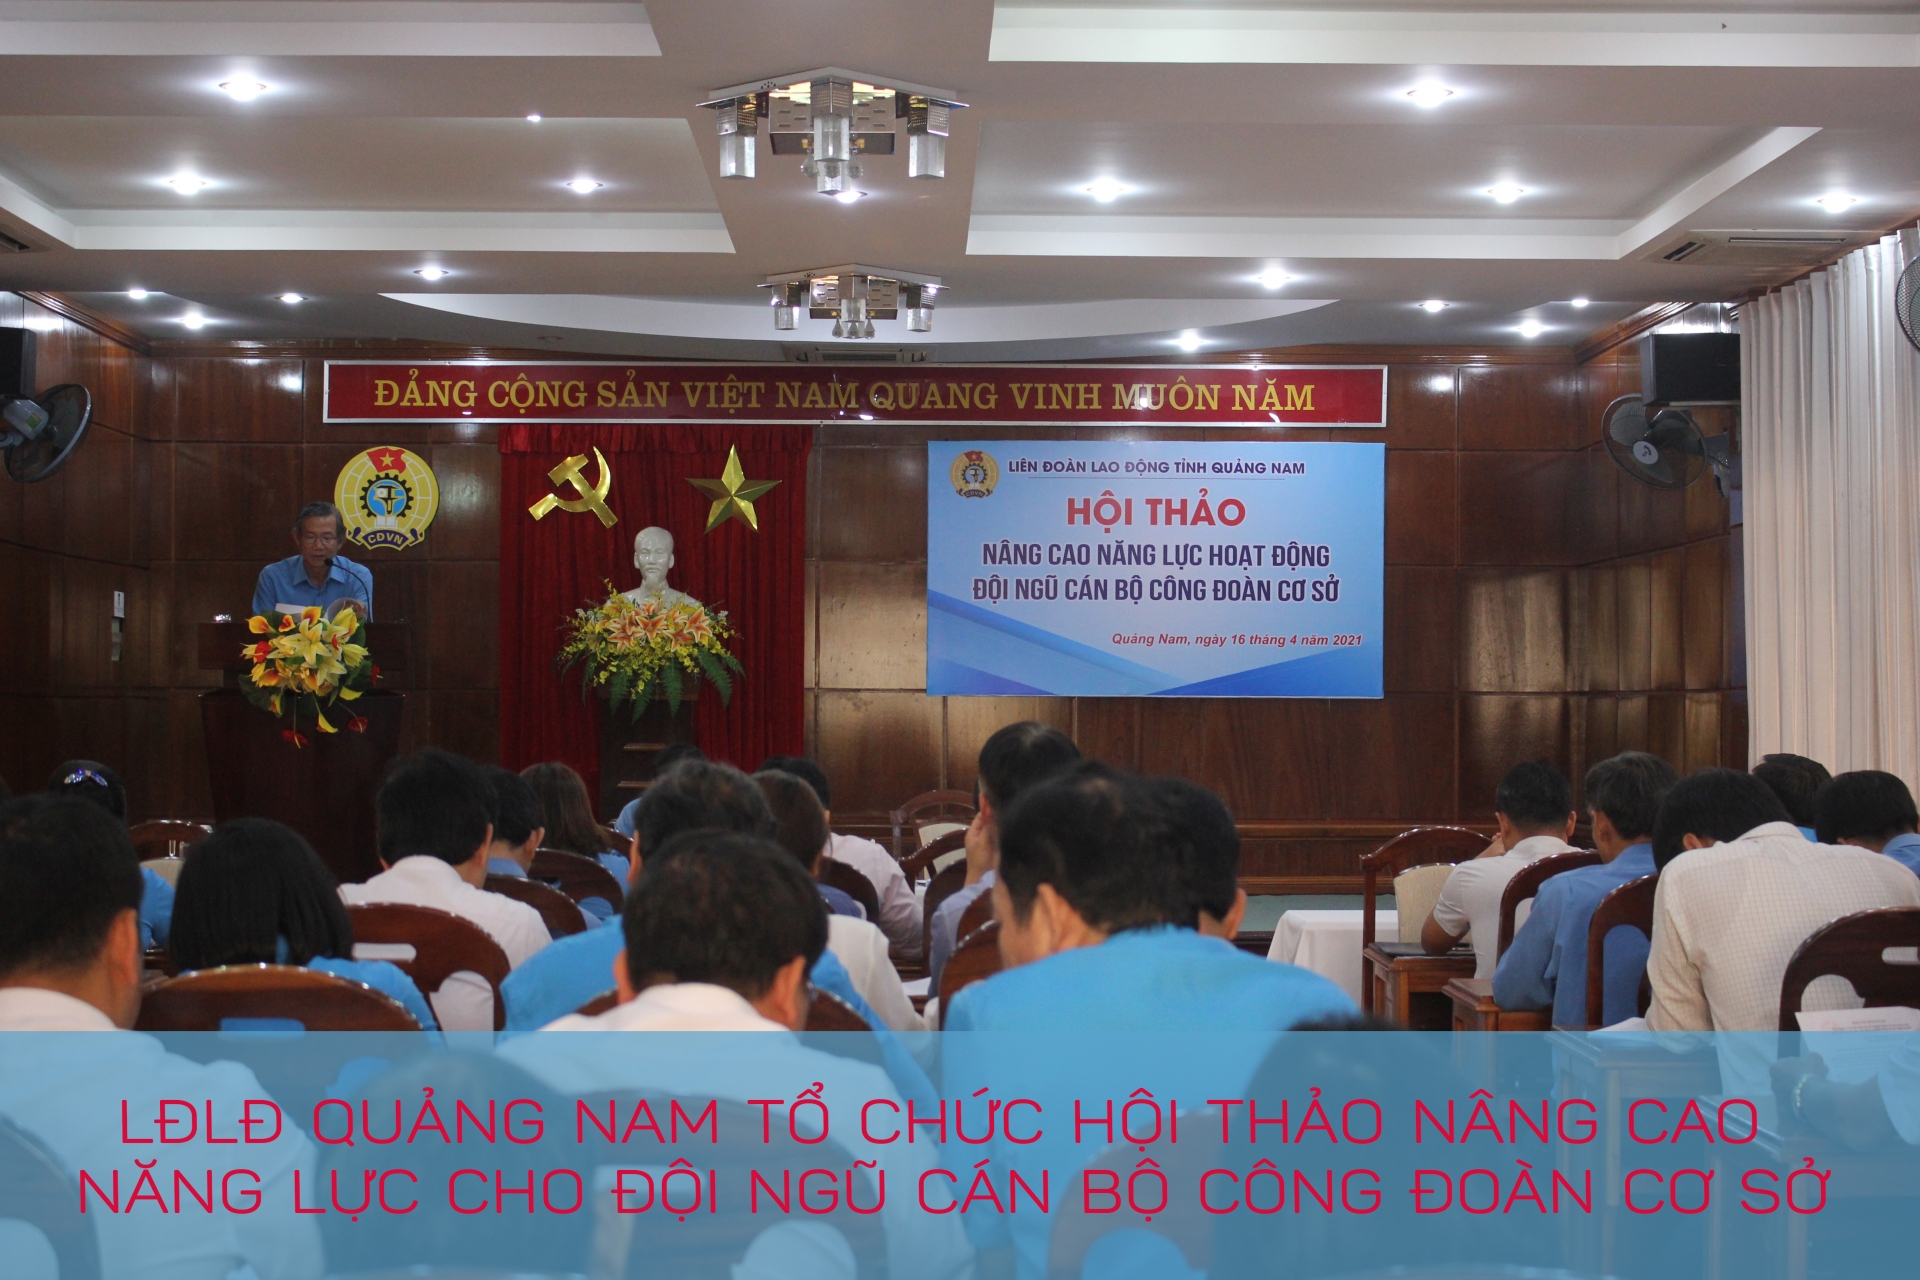 LĐLĐ Quảng Nam tổ chức hội thảo nâng cao năng lực cho đội ngũ cán bộ công đoàn cơ sở